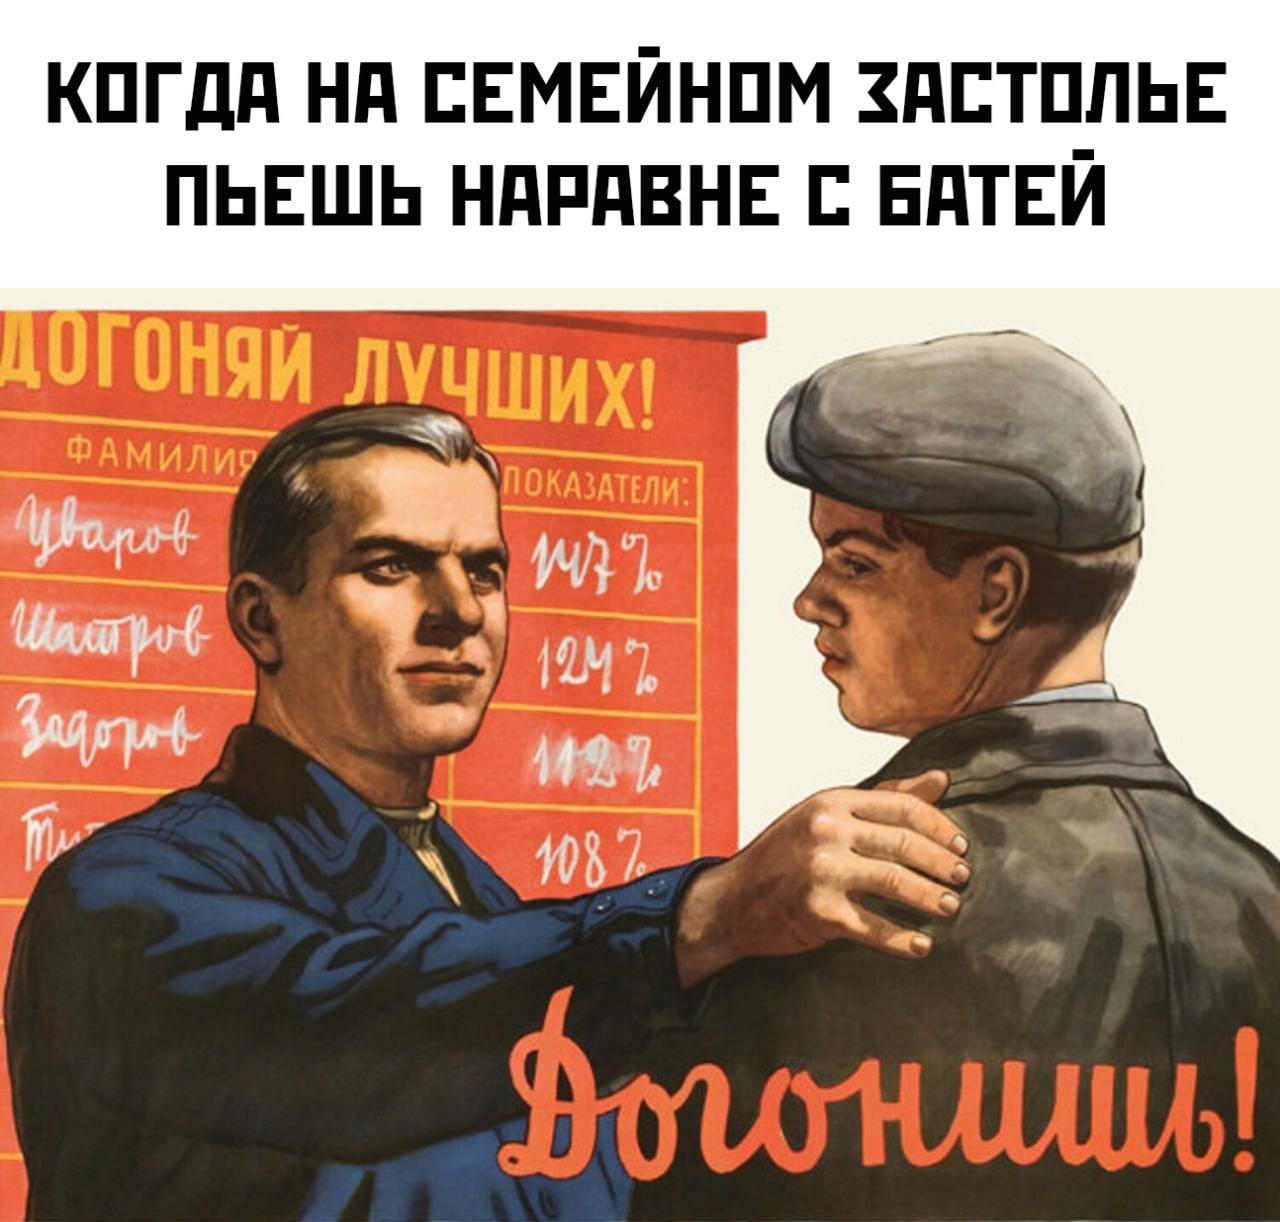 Новый догнать. Советские плакаты товарищ. Прикольные переделанные советские плакаты. Советские плакаты про работу. Советские плакаты приколы юмор.